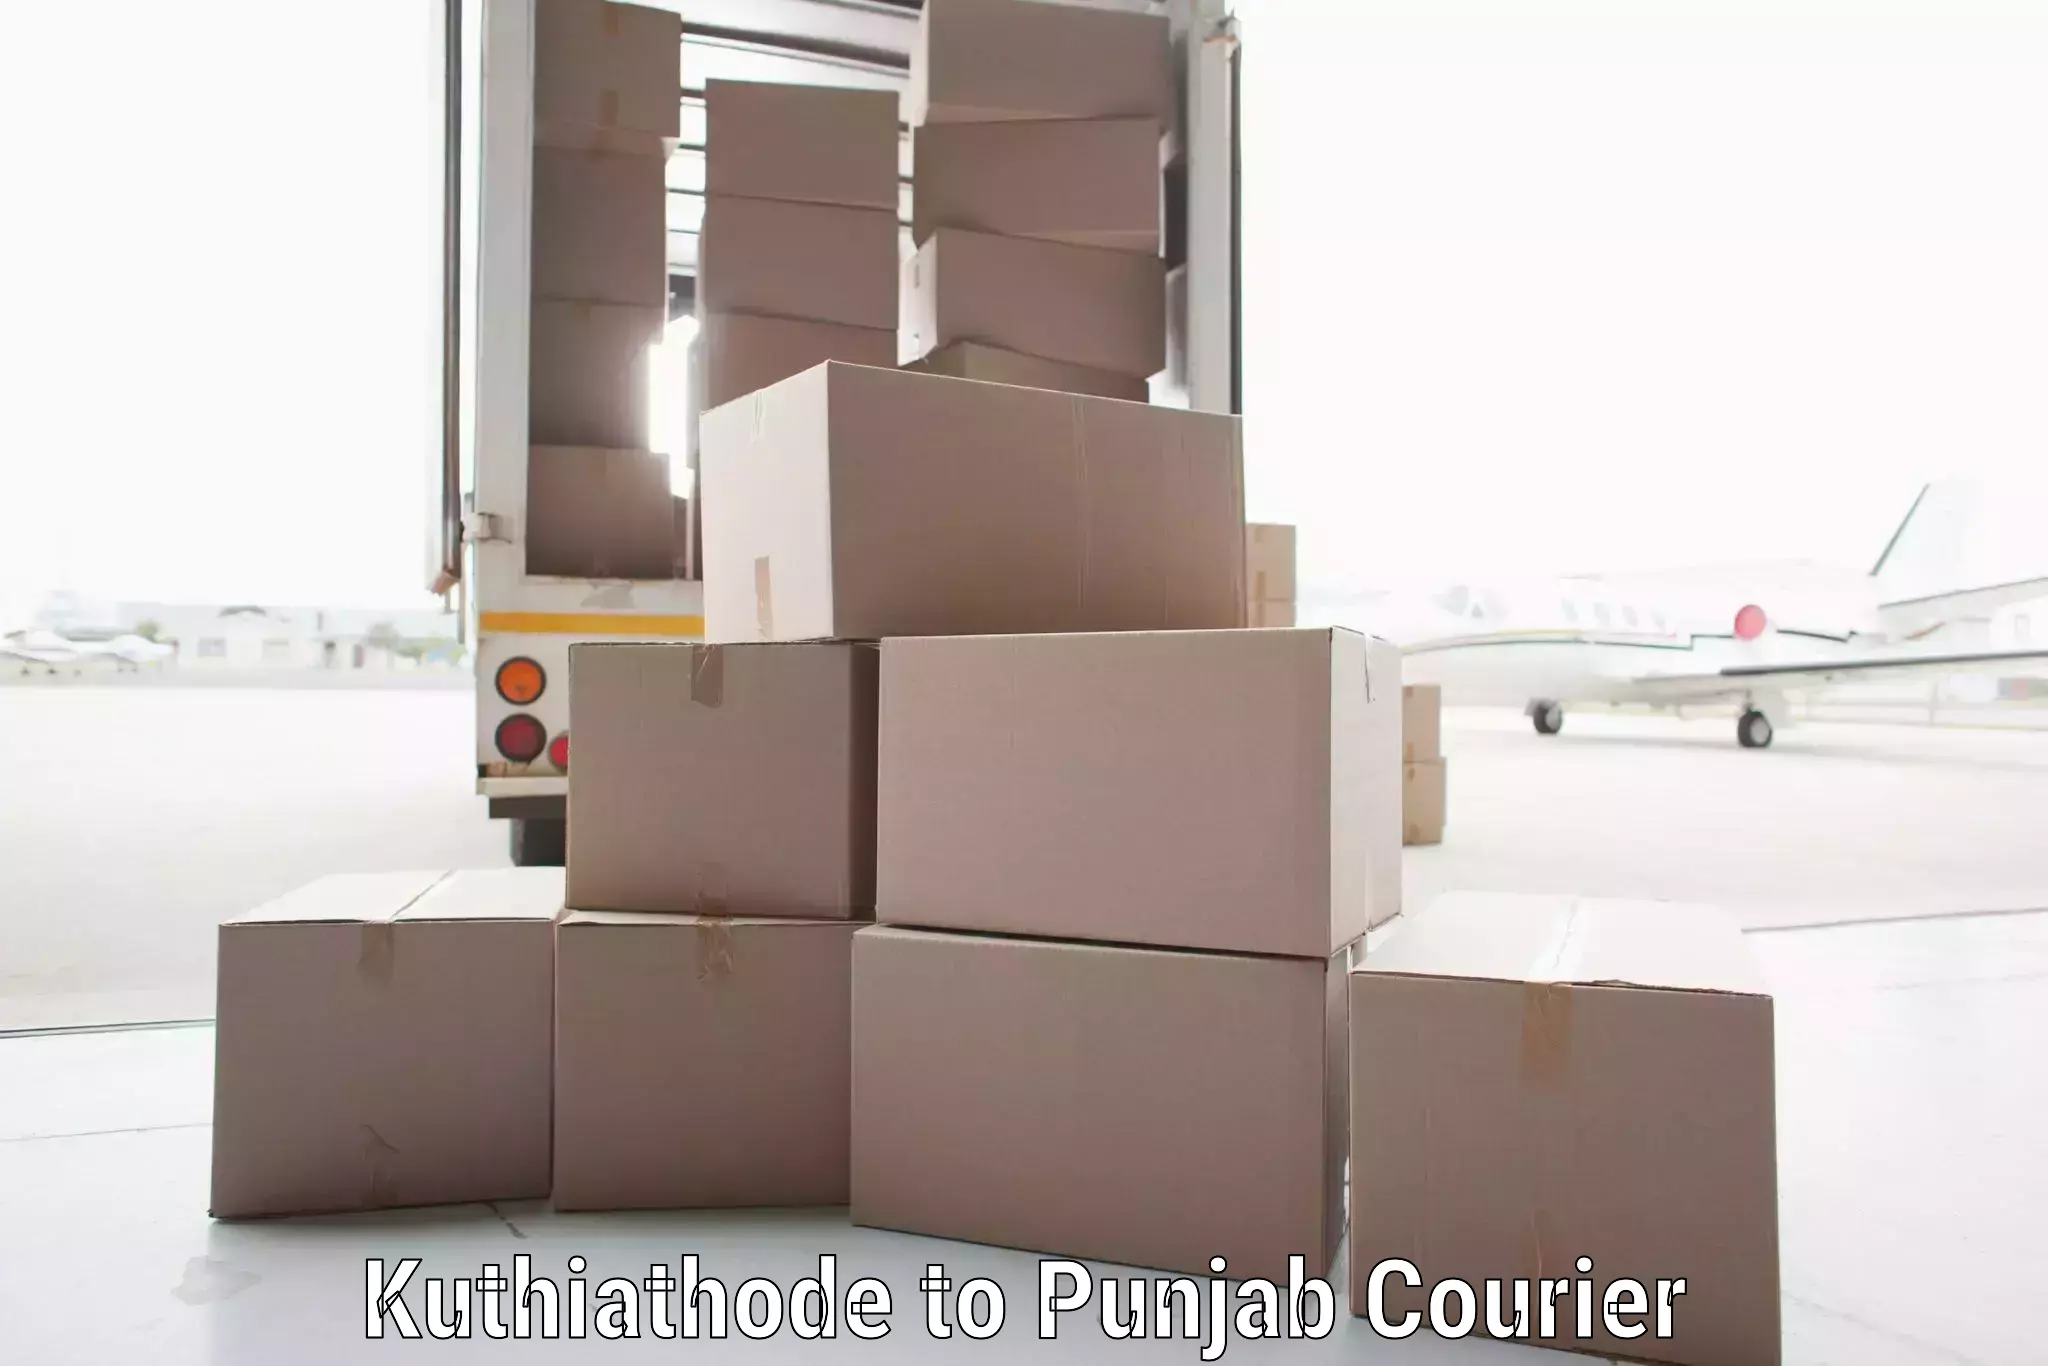 Pharmaceutical courier Kuthiathode to Kotkapura